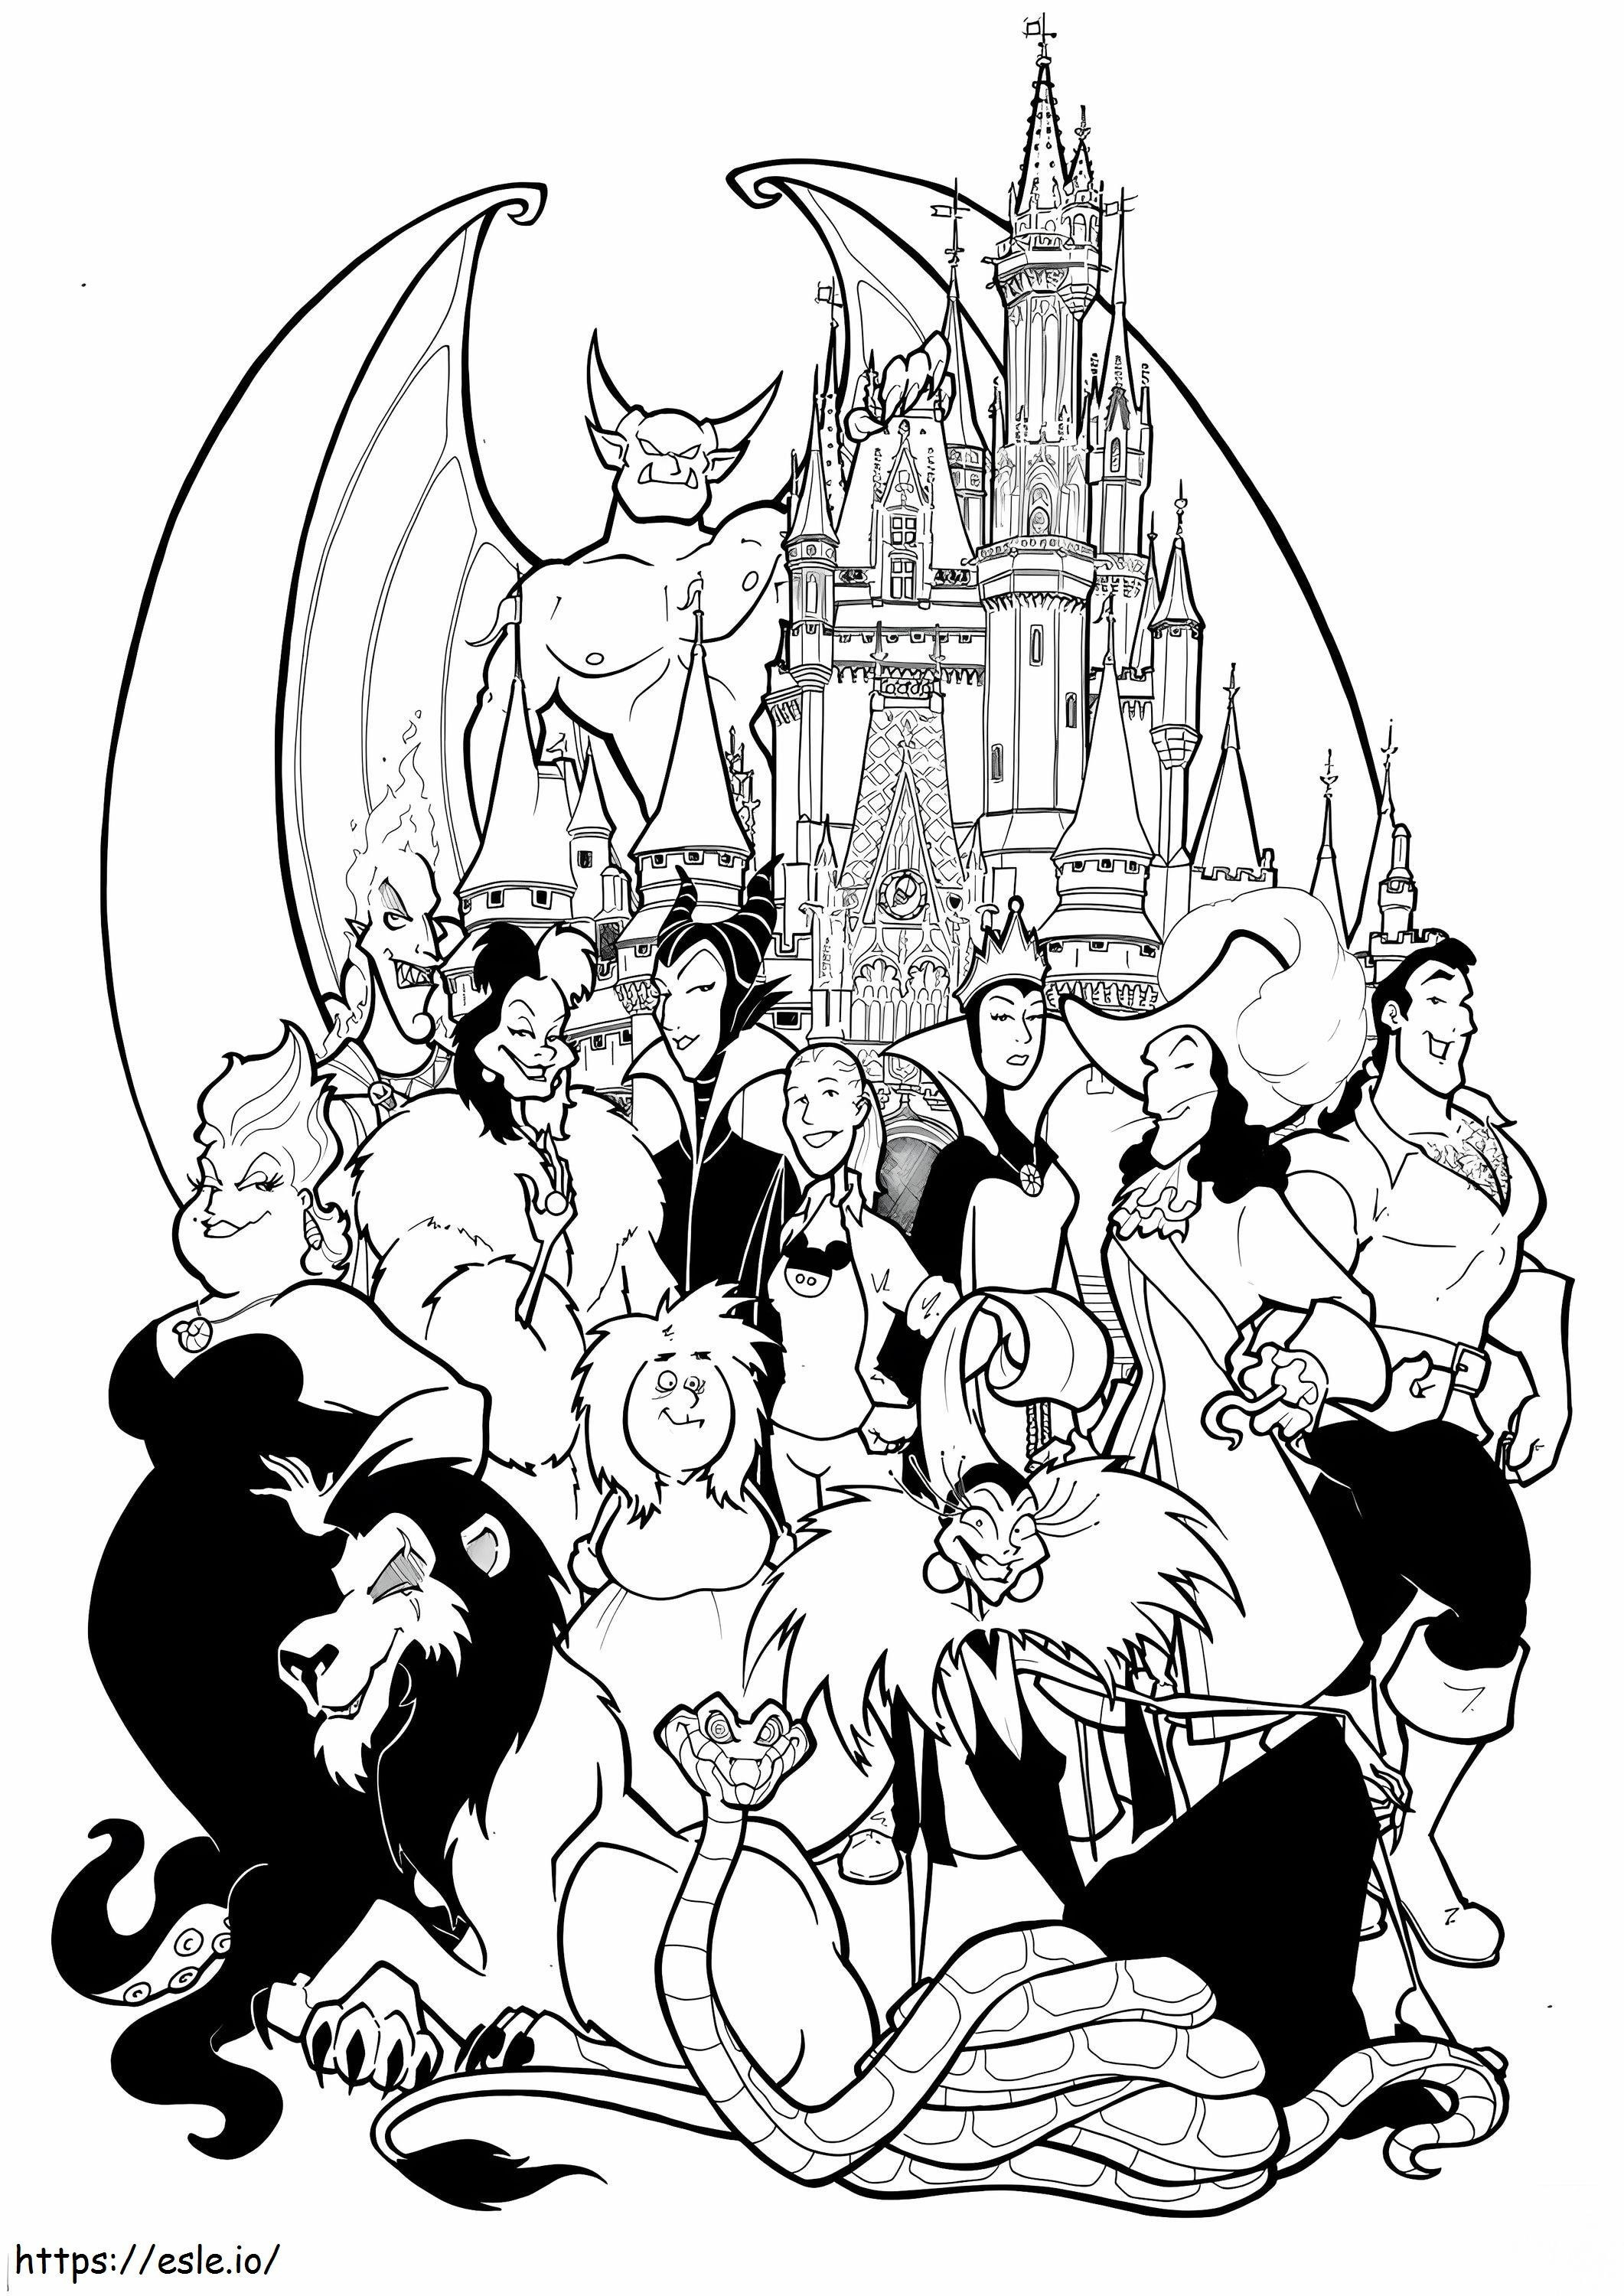 Disney Villains 1 coloring page